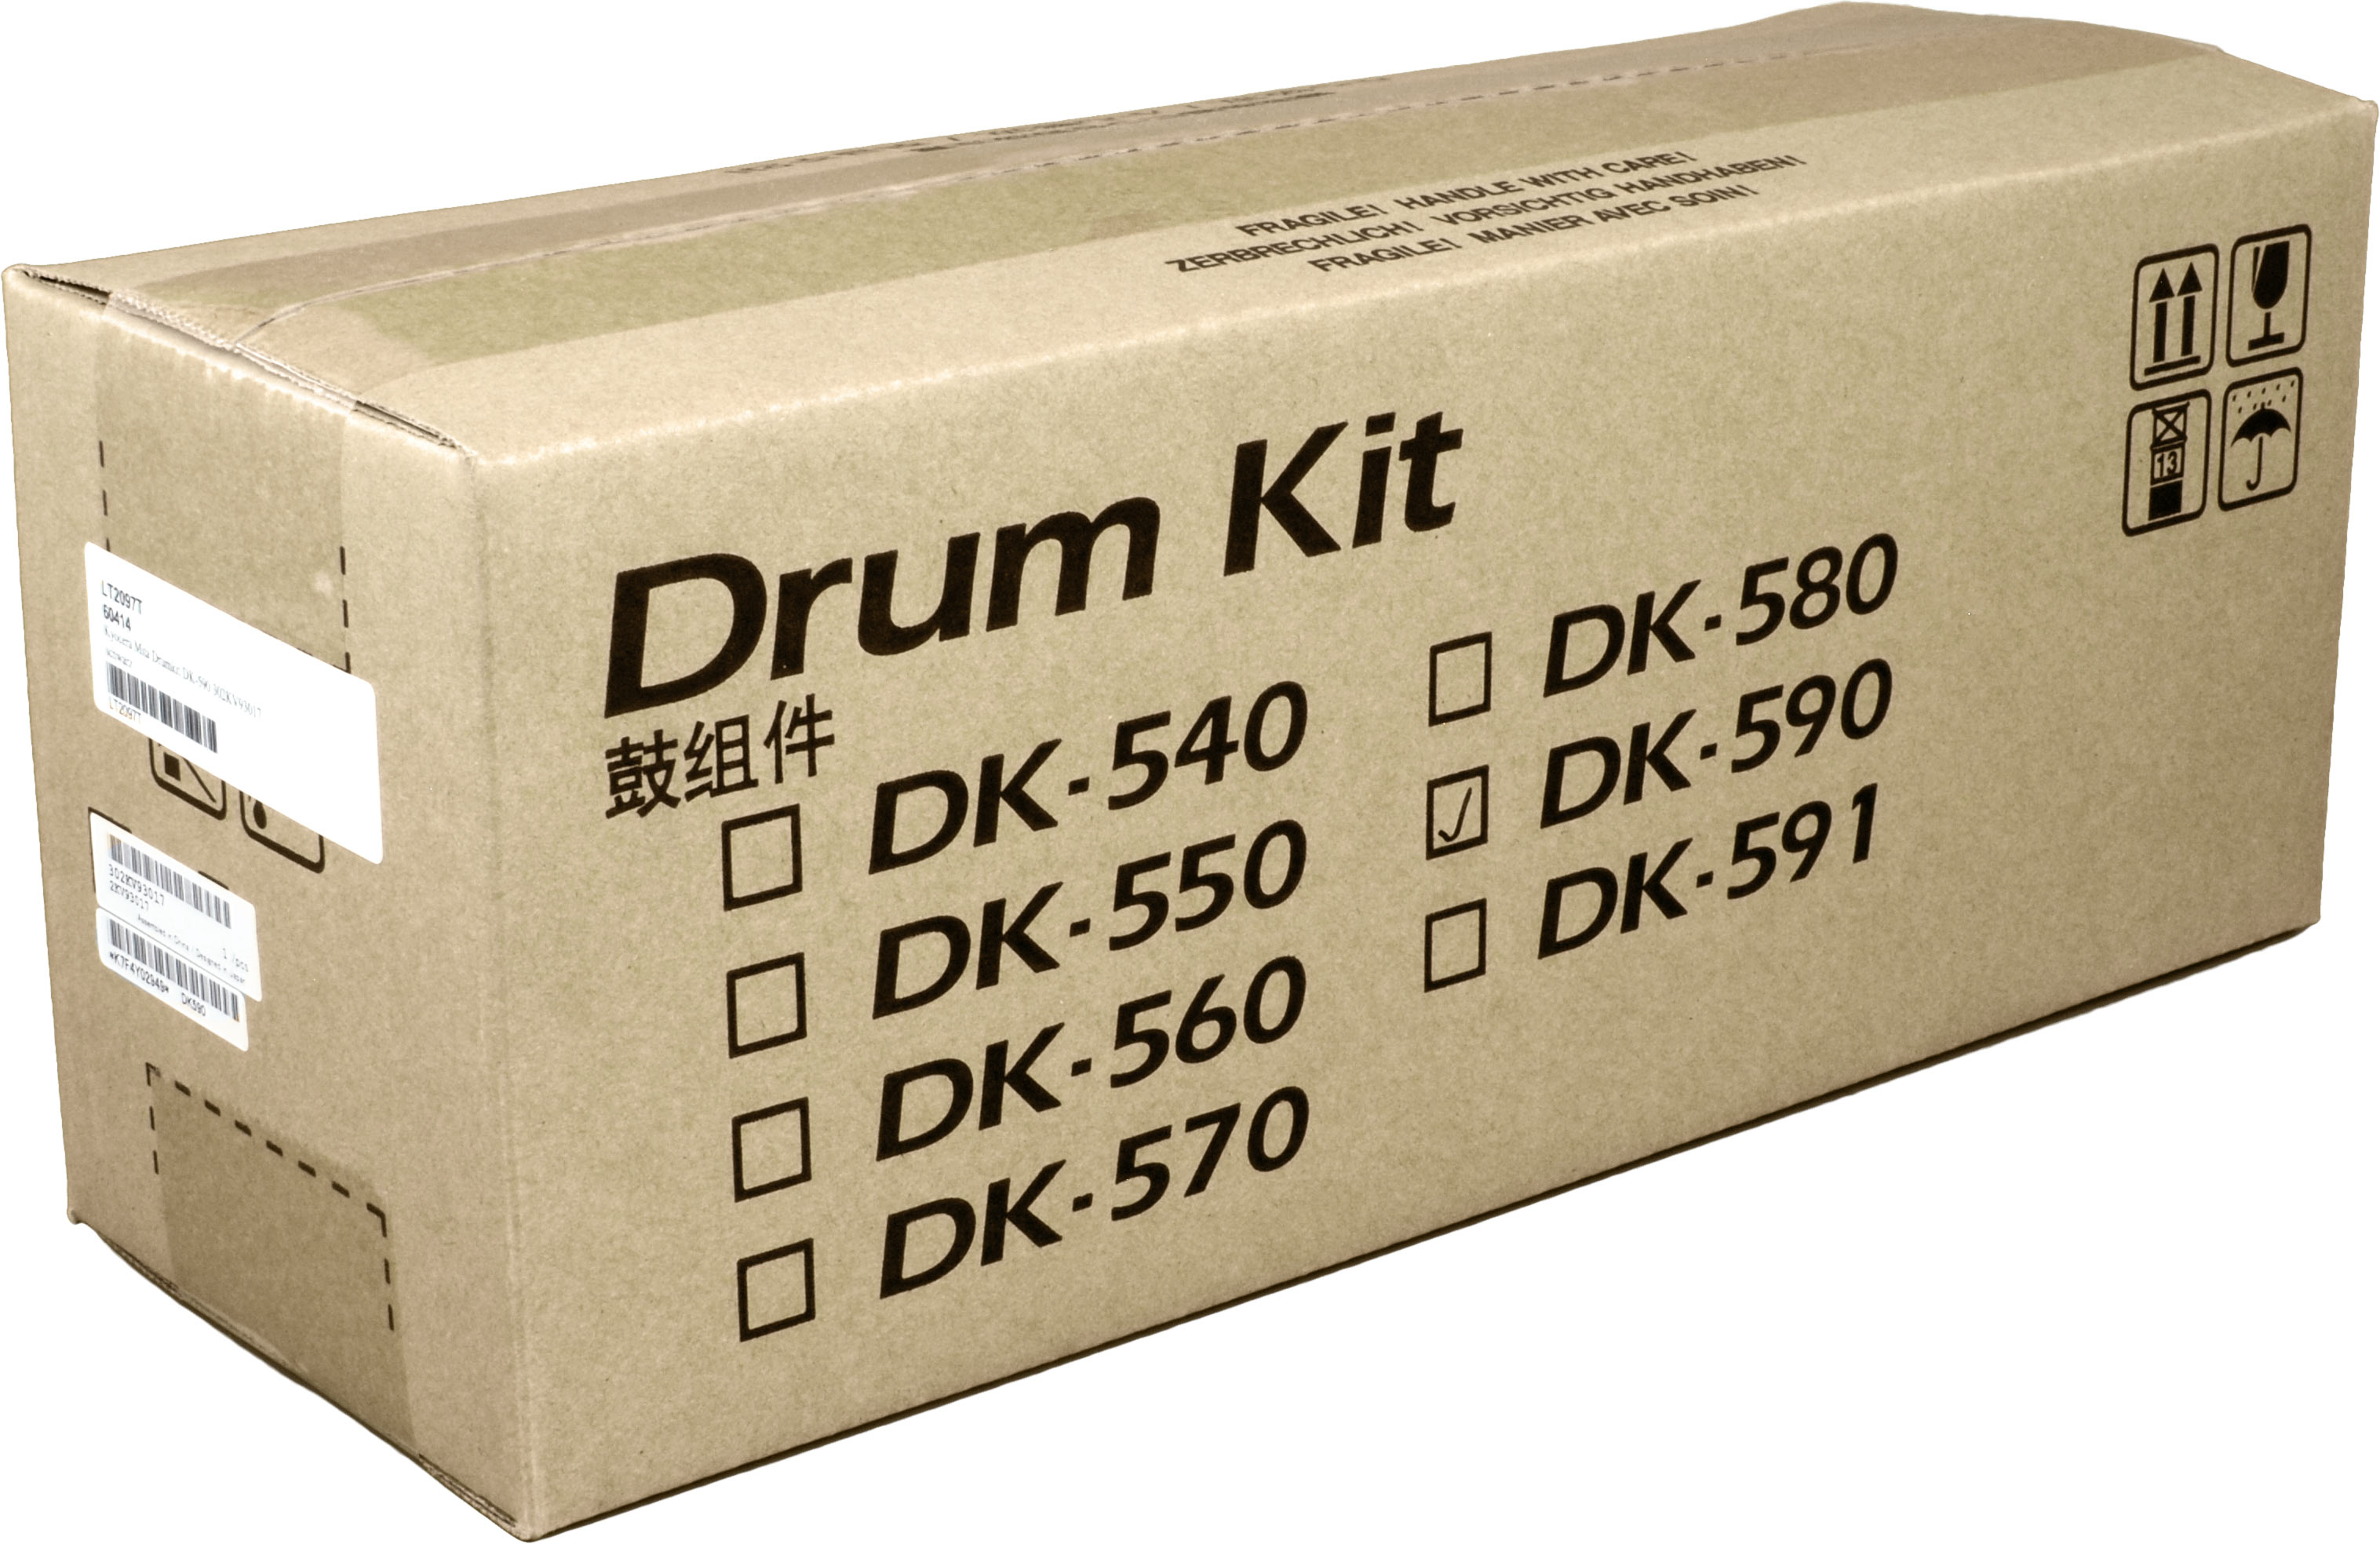 Kyocera Drumkit DK-590  302KV93017